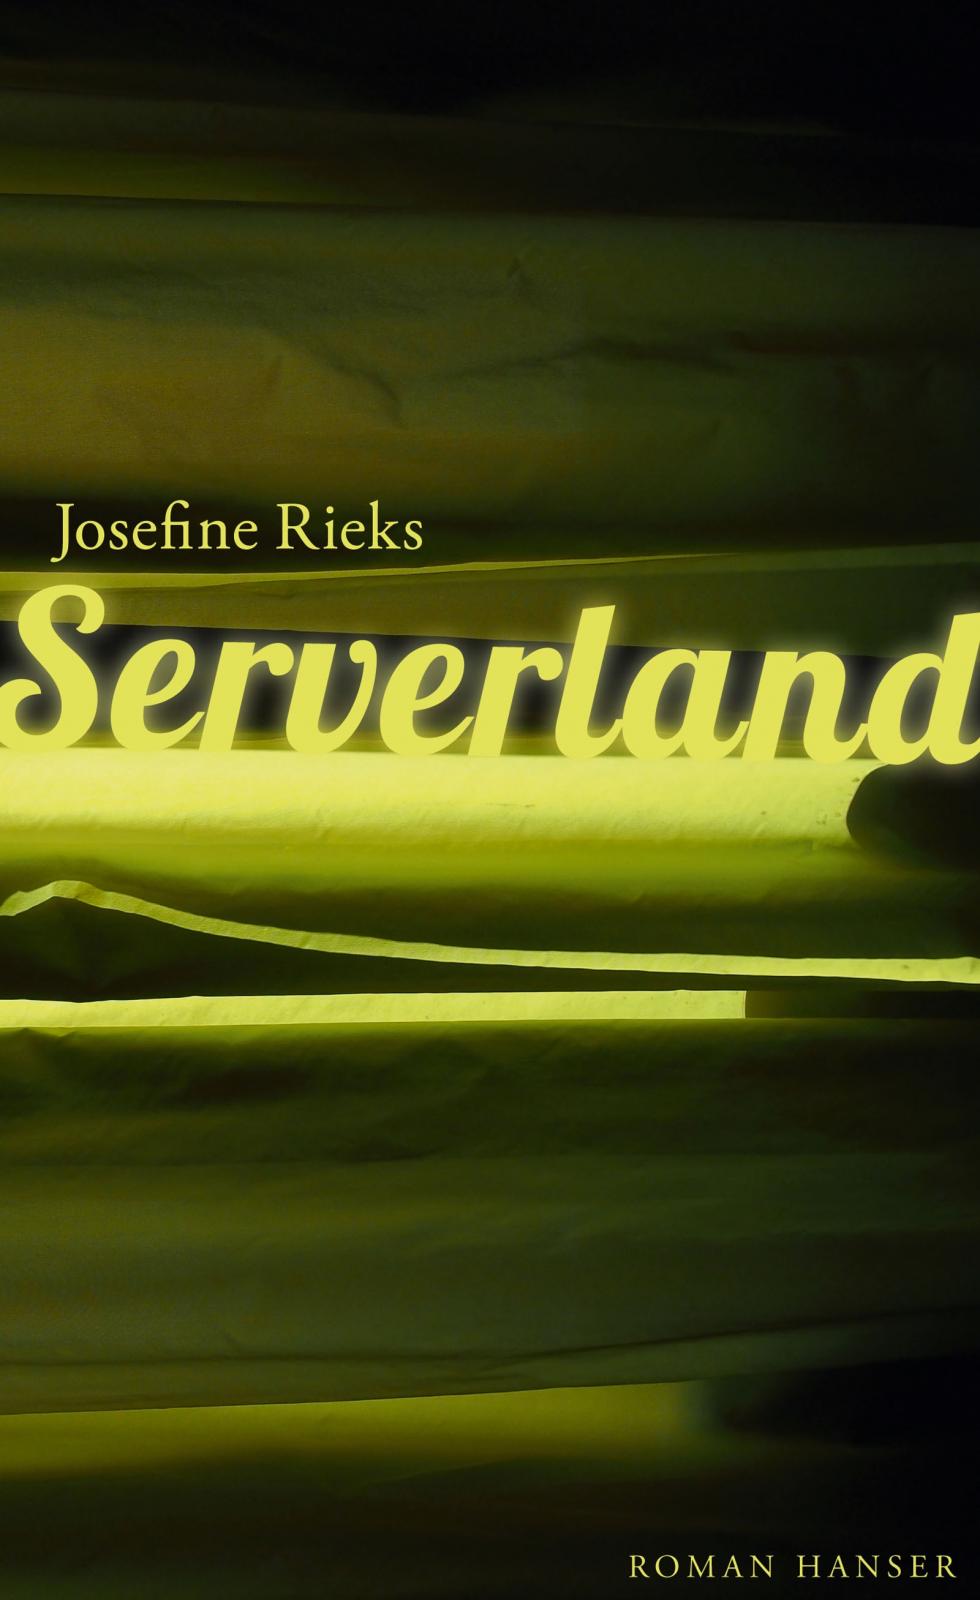 Josefine Rieks: Serverland